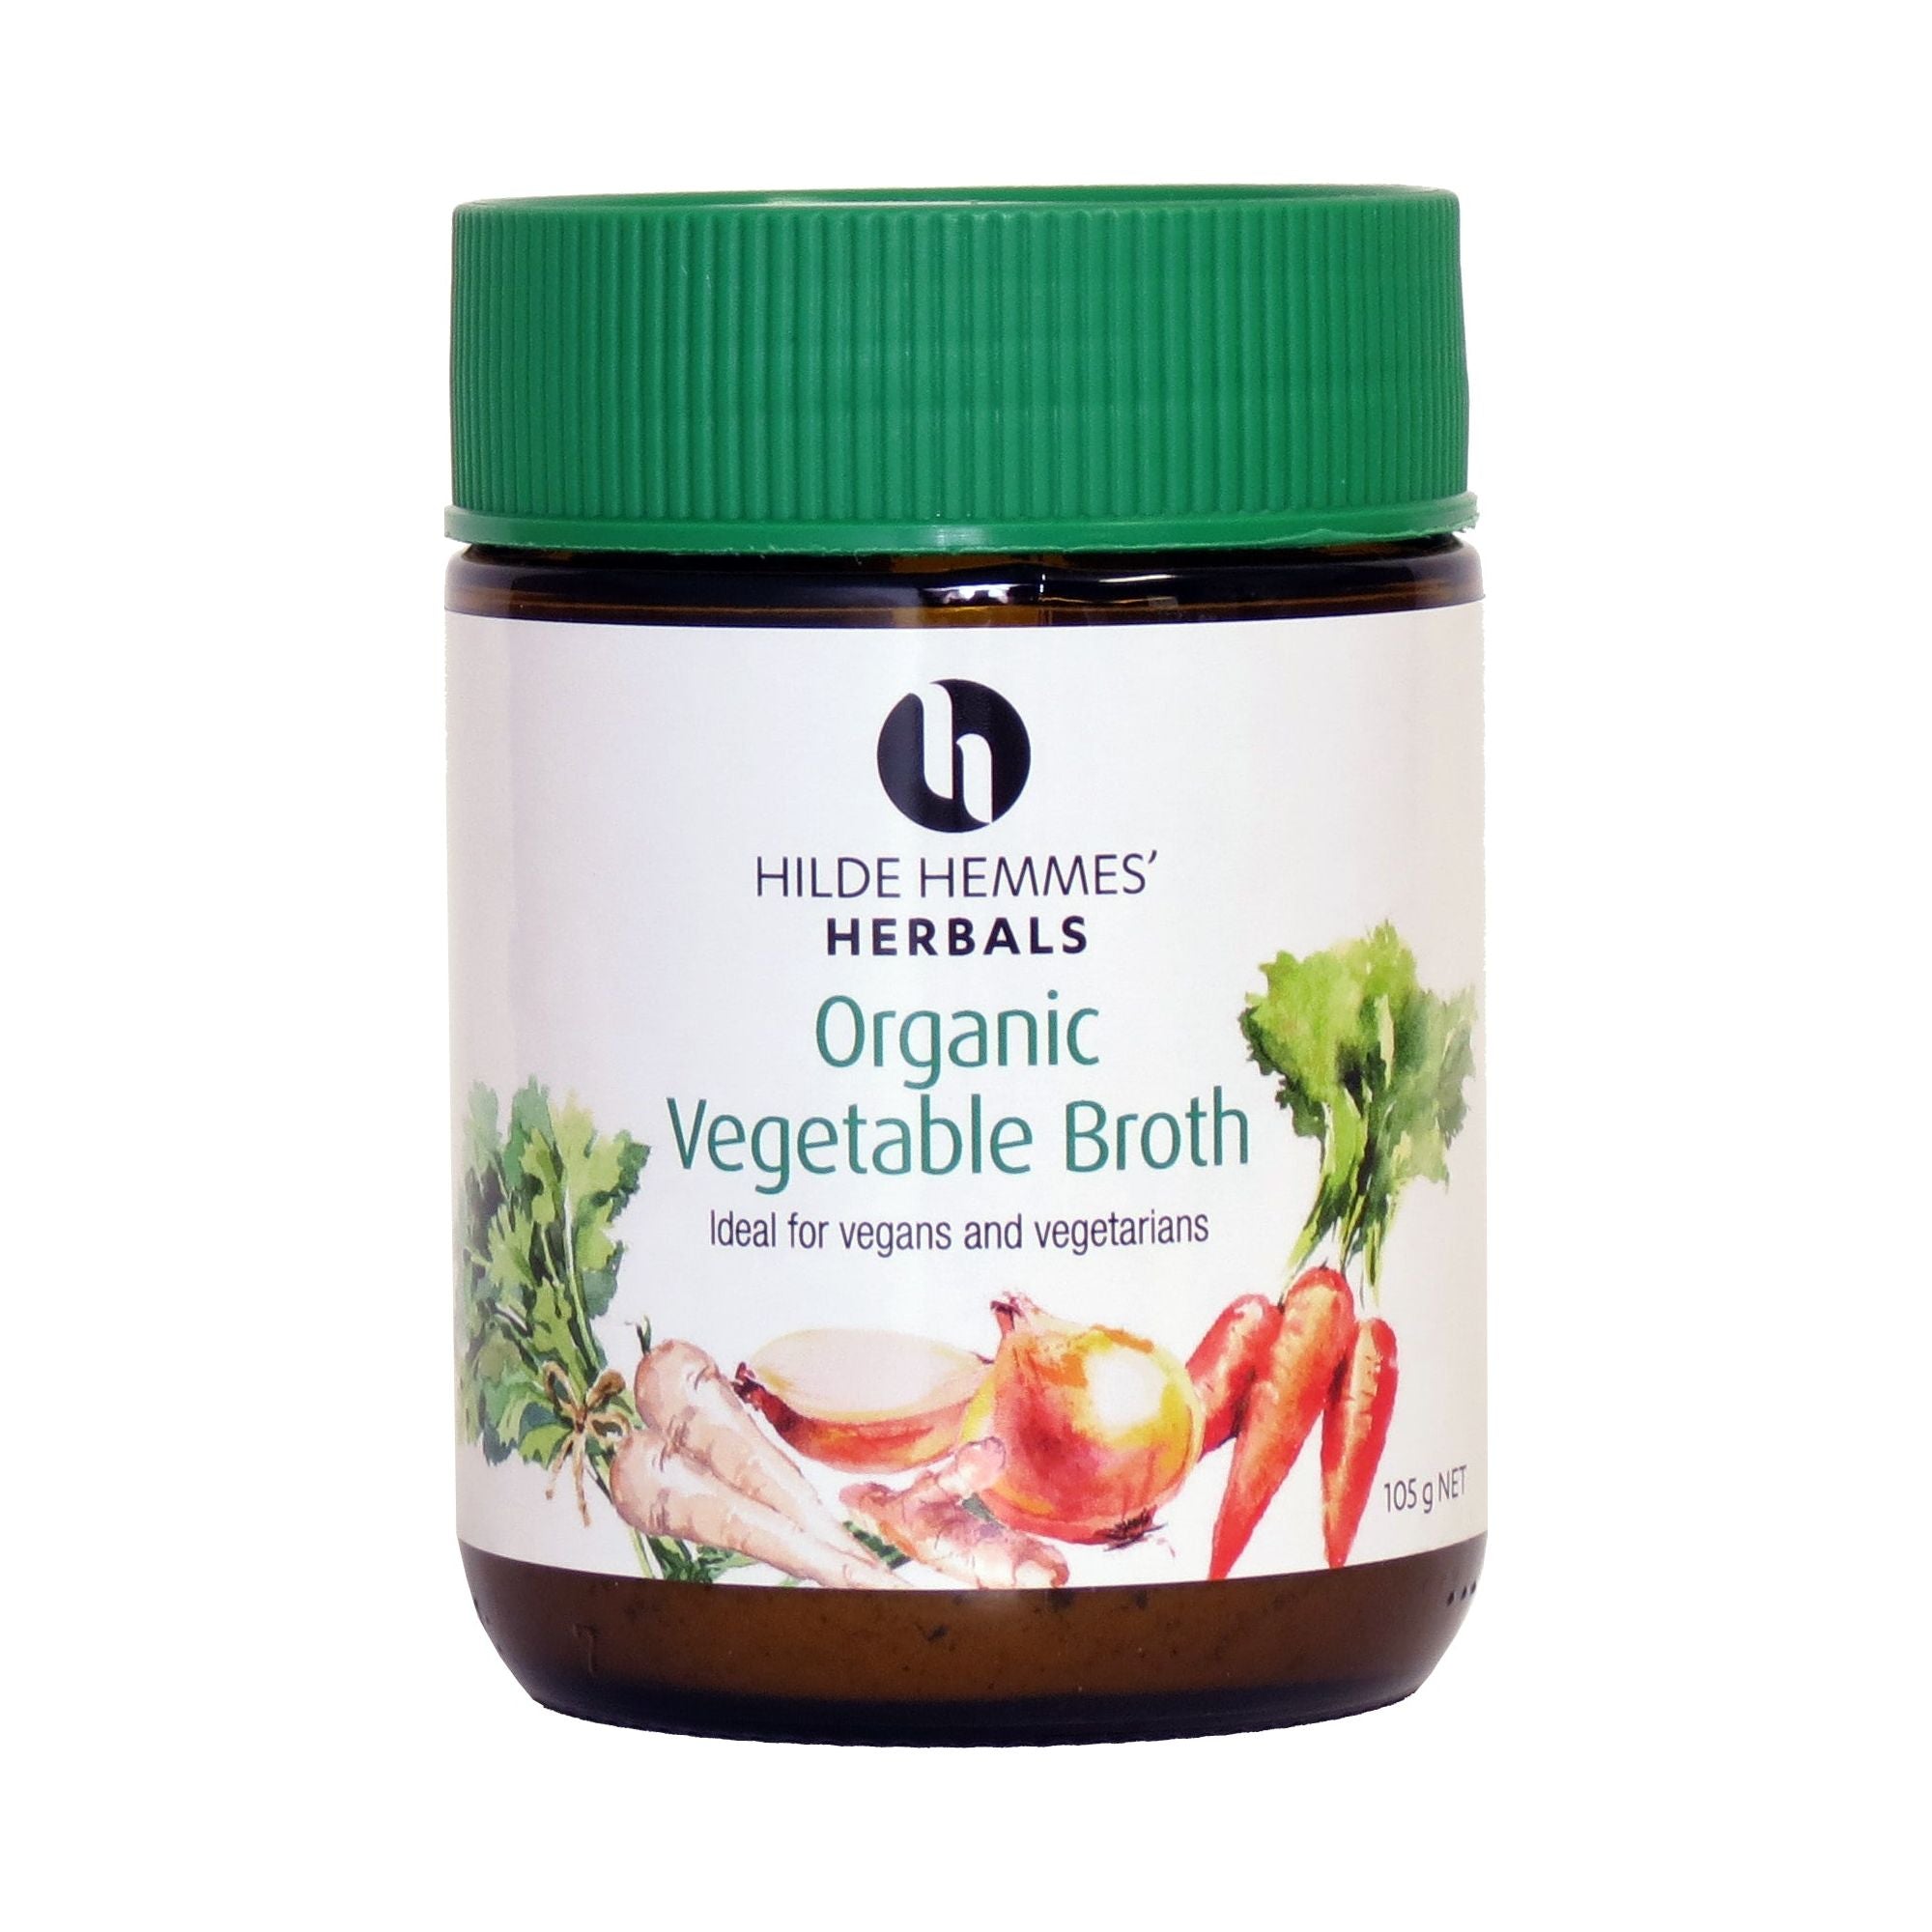 Hilde Hemmes Herbal’s Organic Vegetable Broth 105g